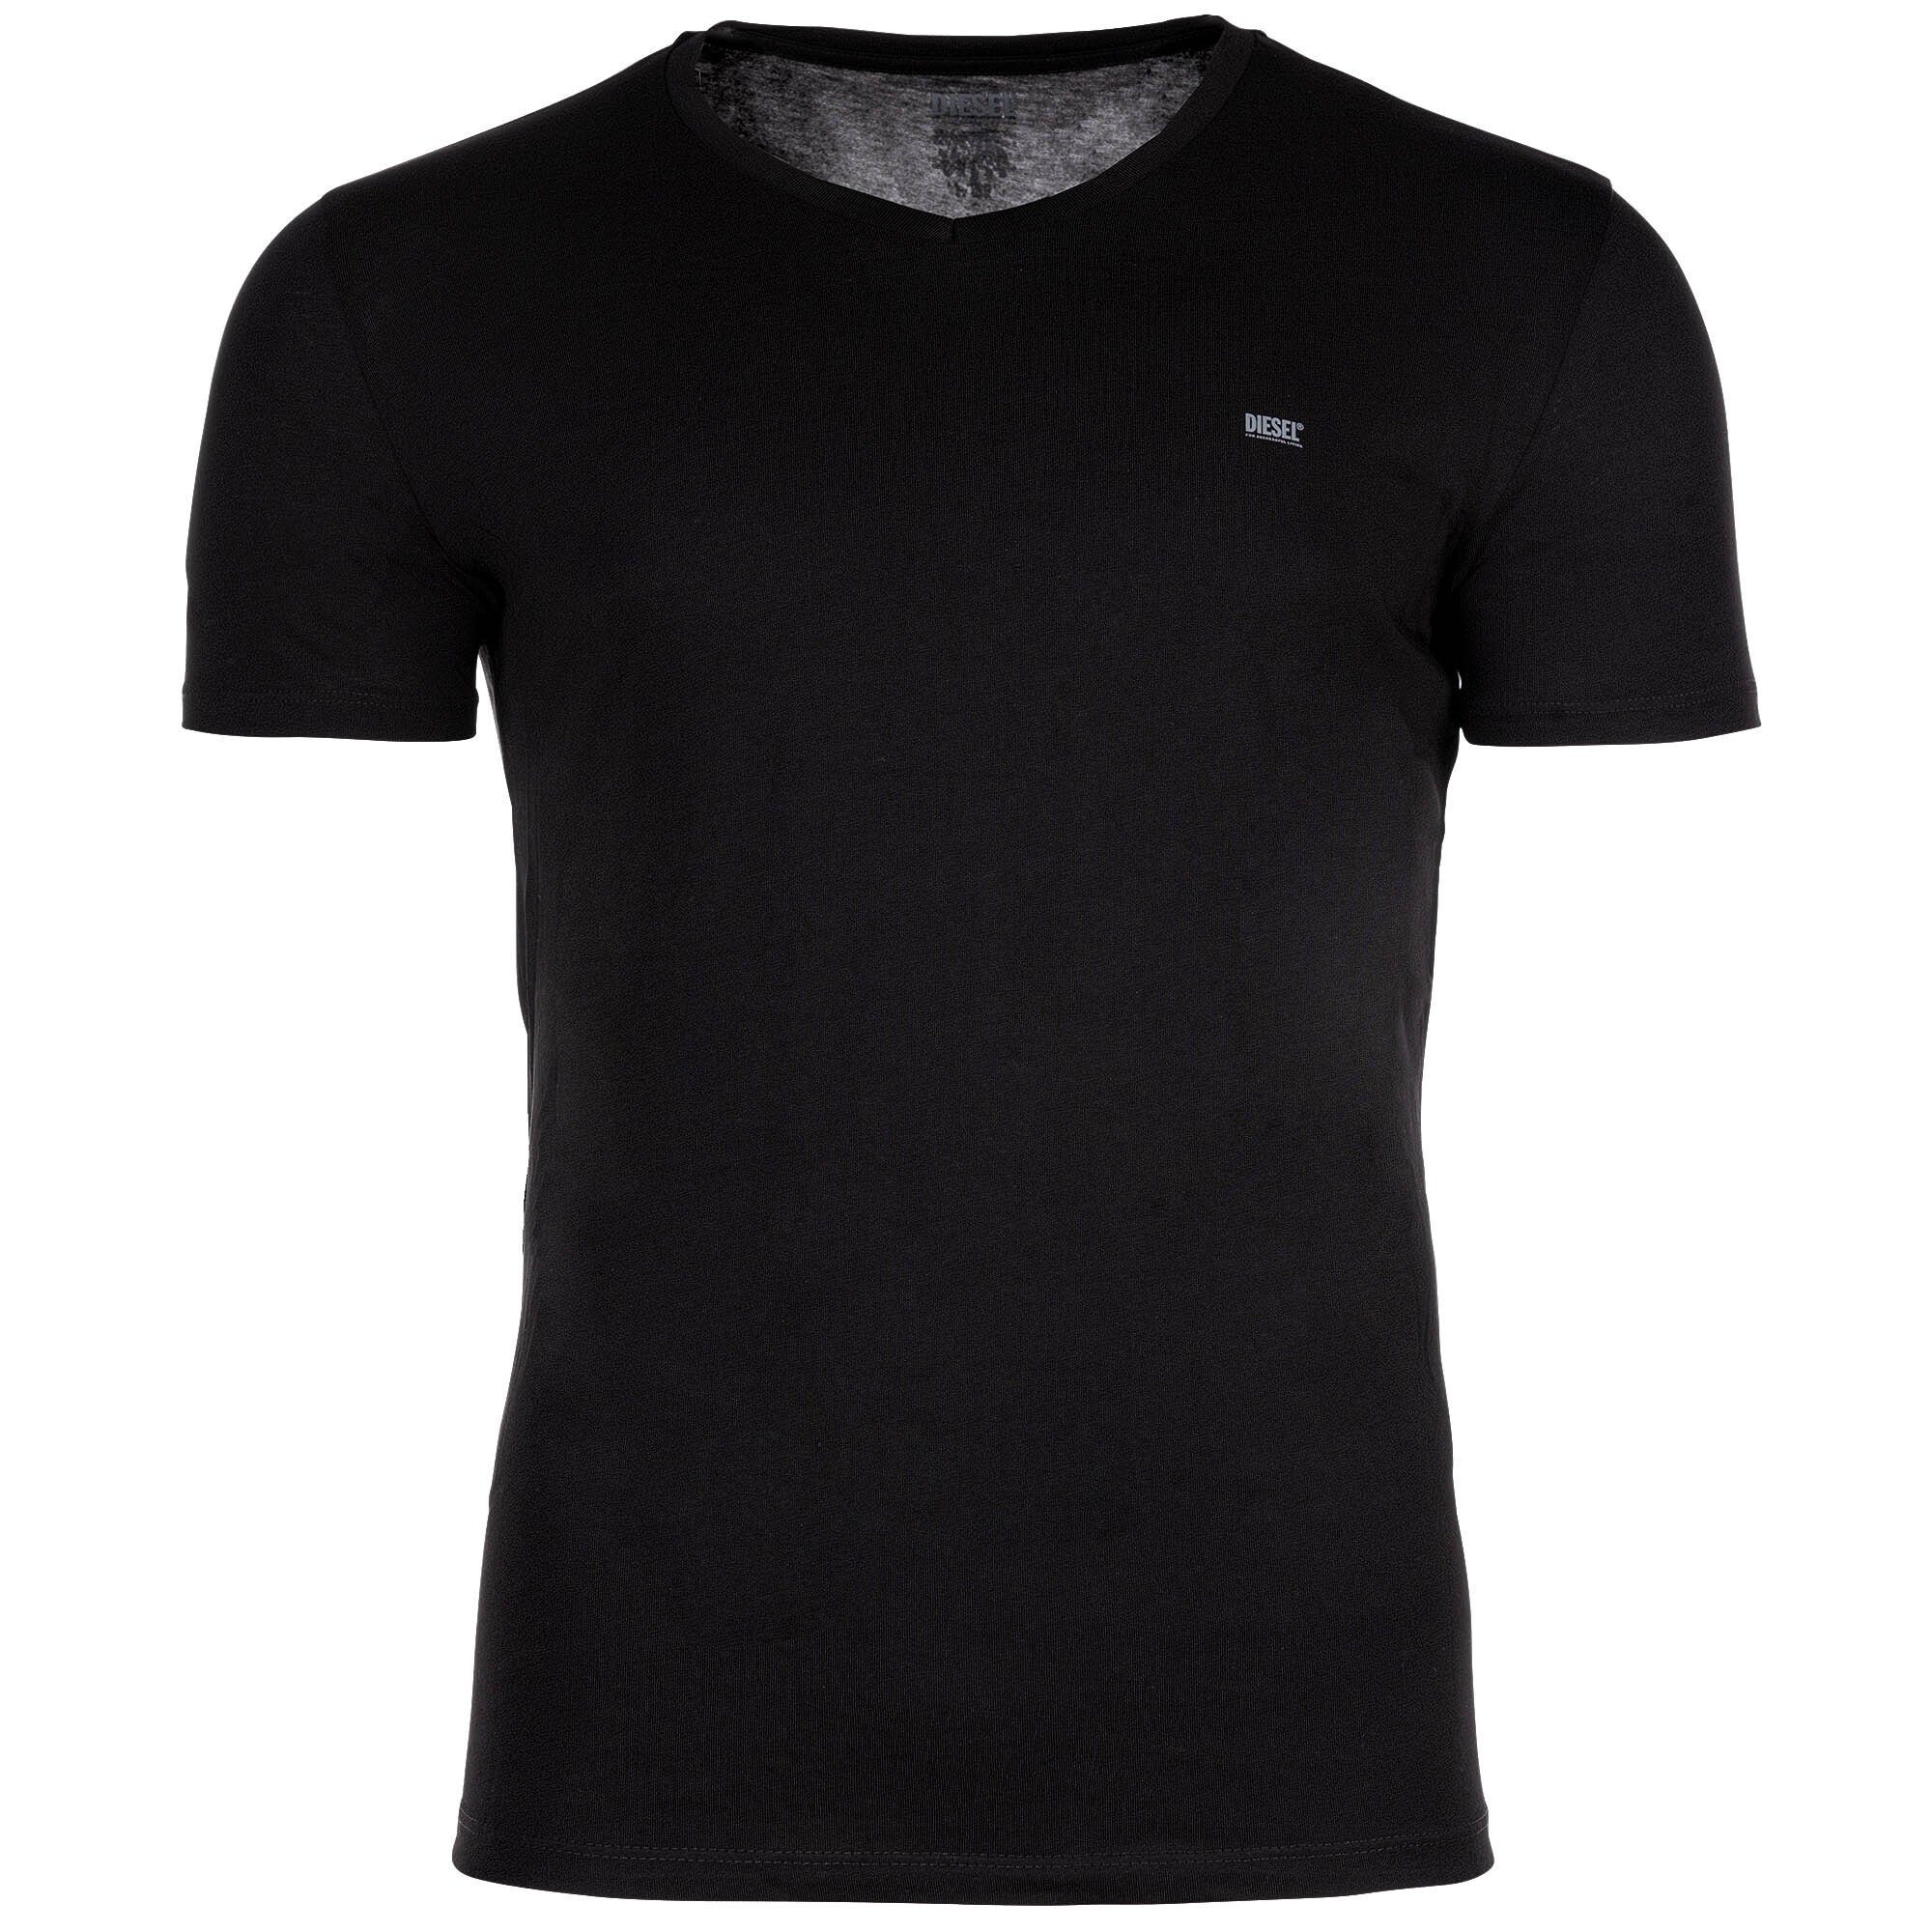 T-Shirt, Schwarz/Grau/Weiß - 3er T-Shirt Herren Pack Diesel